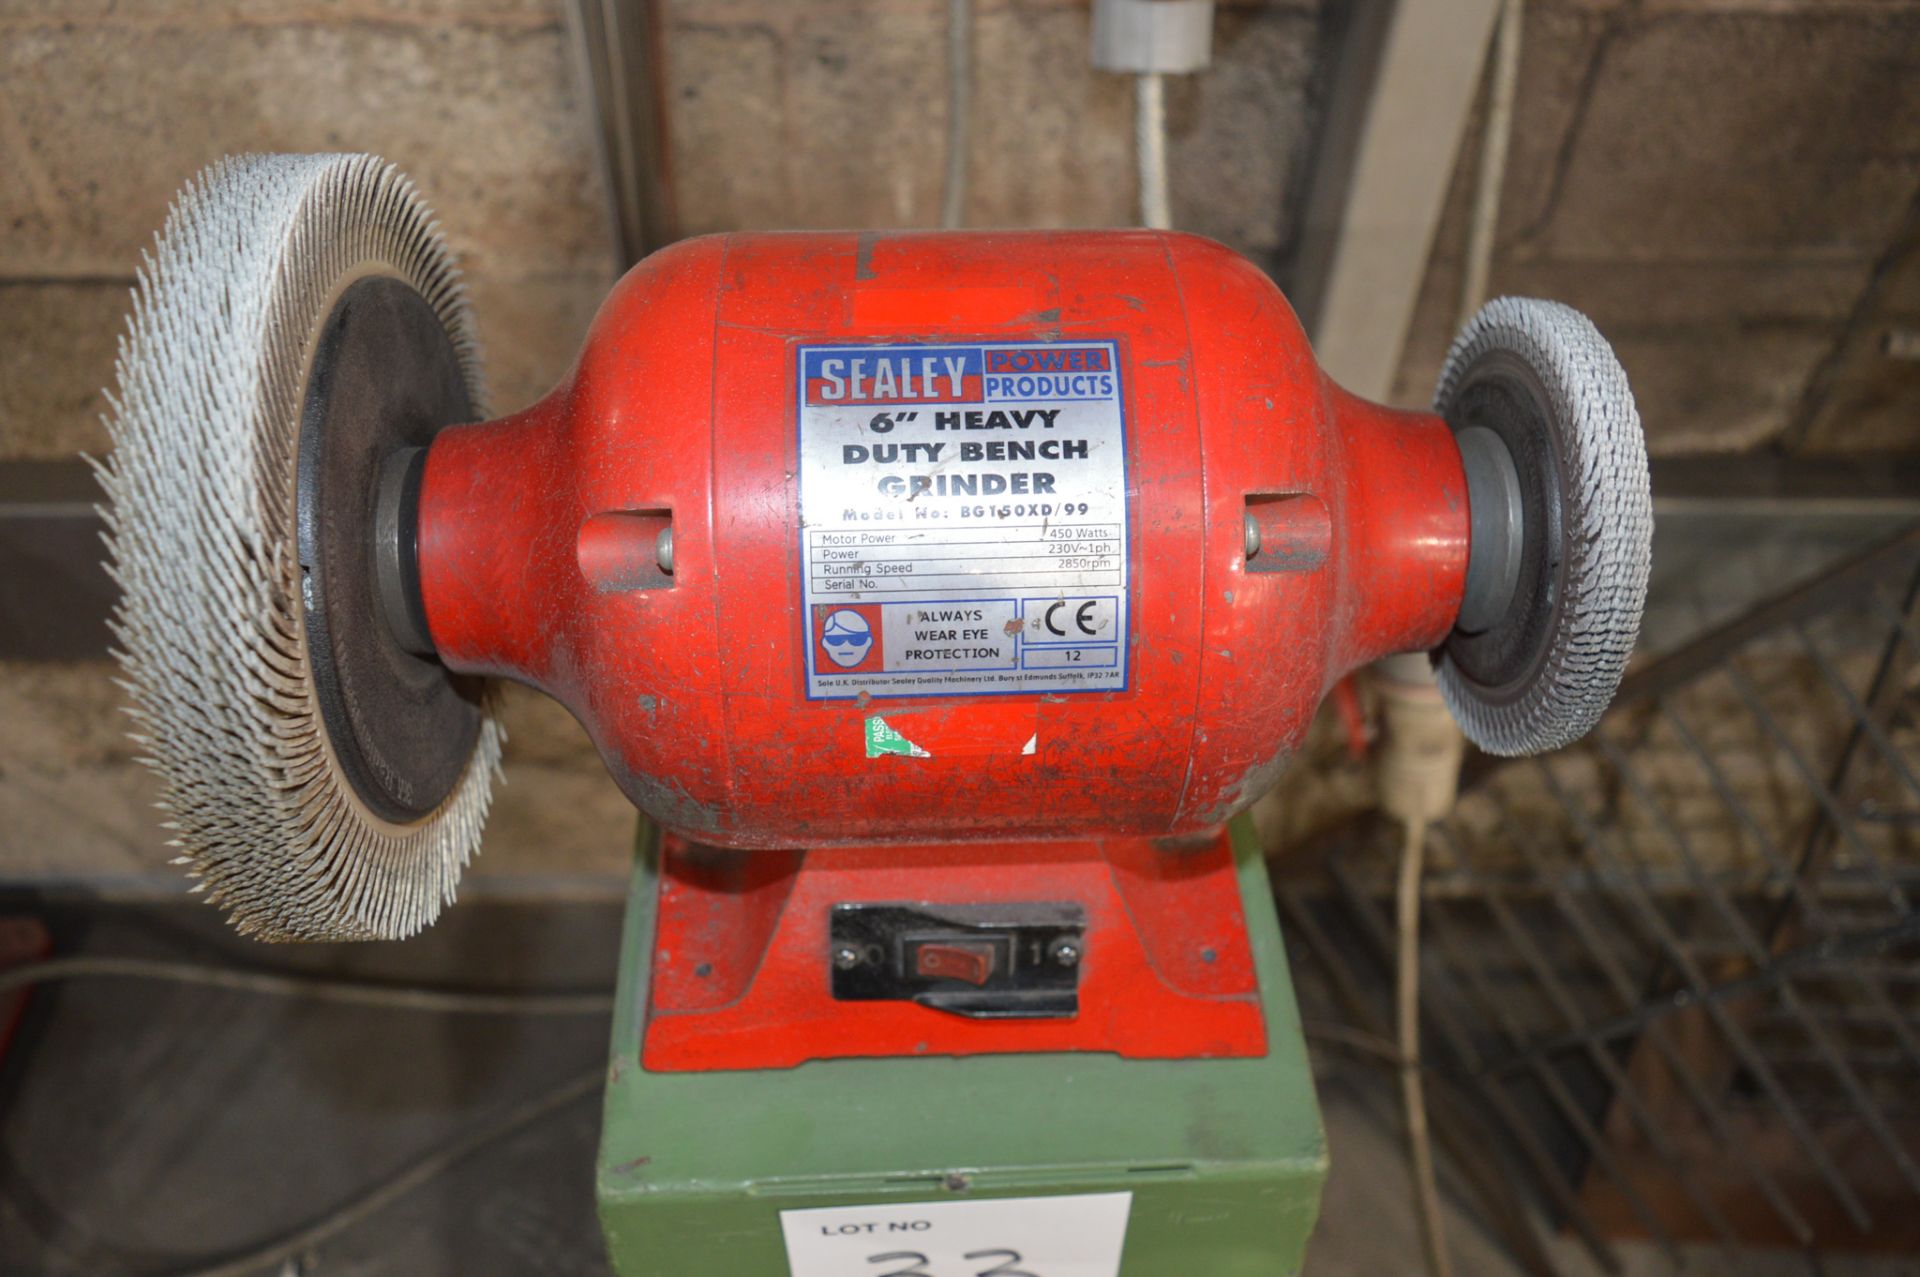 Sealey BG150XD/99 240v 6" heavy duty bench grinder On steel pedestal - Image 2 of 2